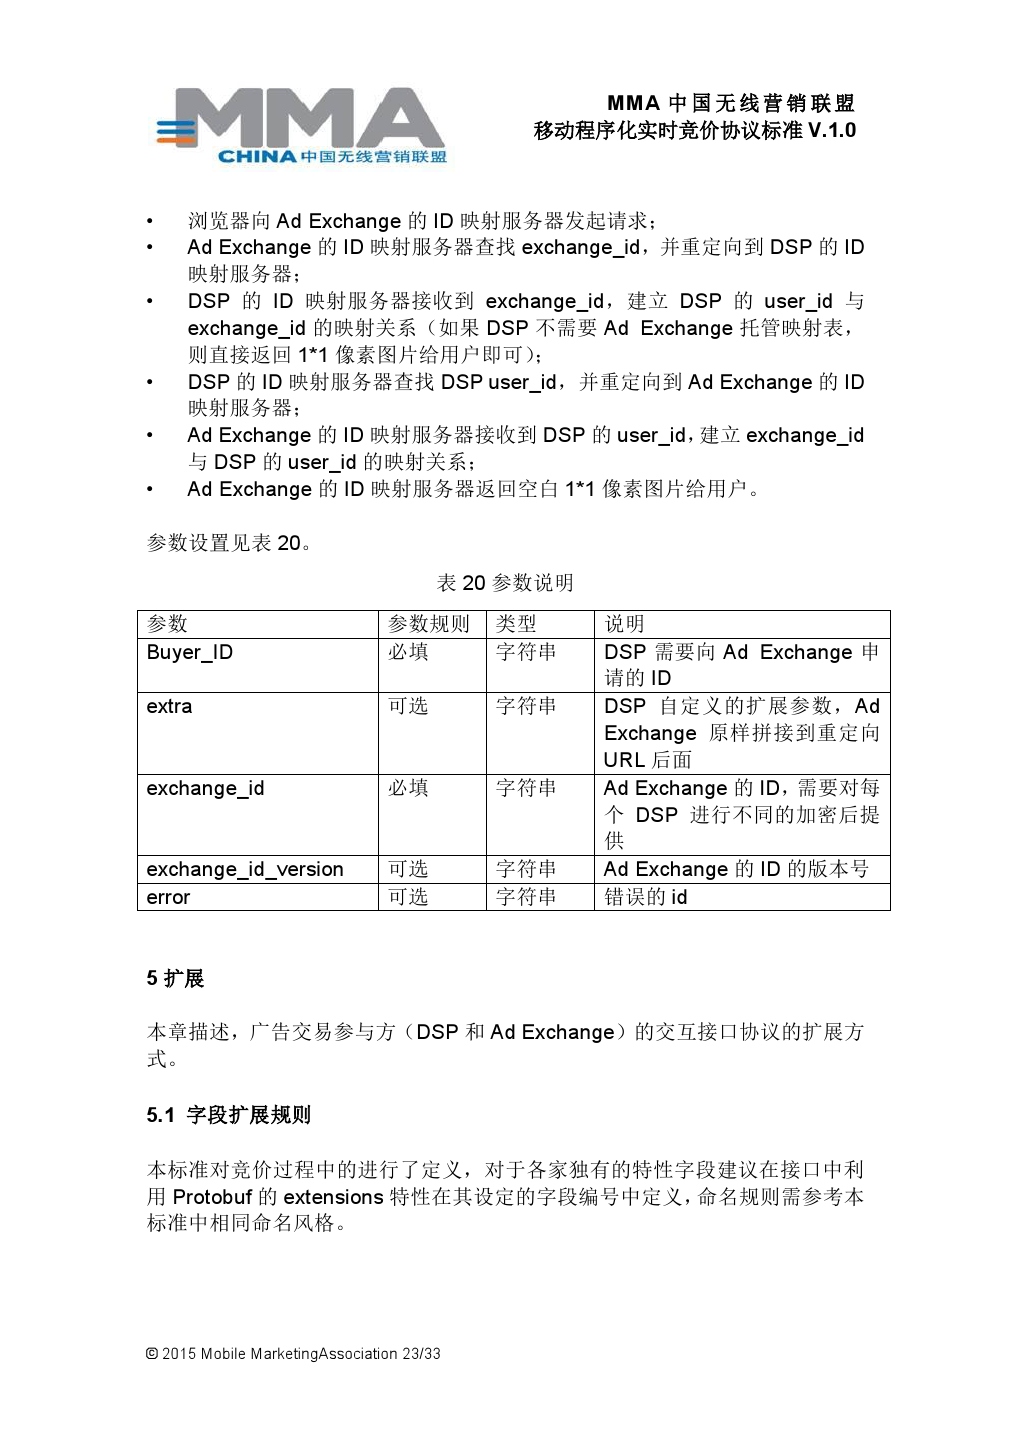 MMA中国无线营销联盟移动程序化实时竞价协议标准V.1.0_000024